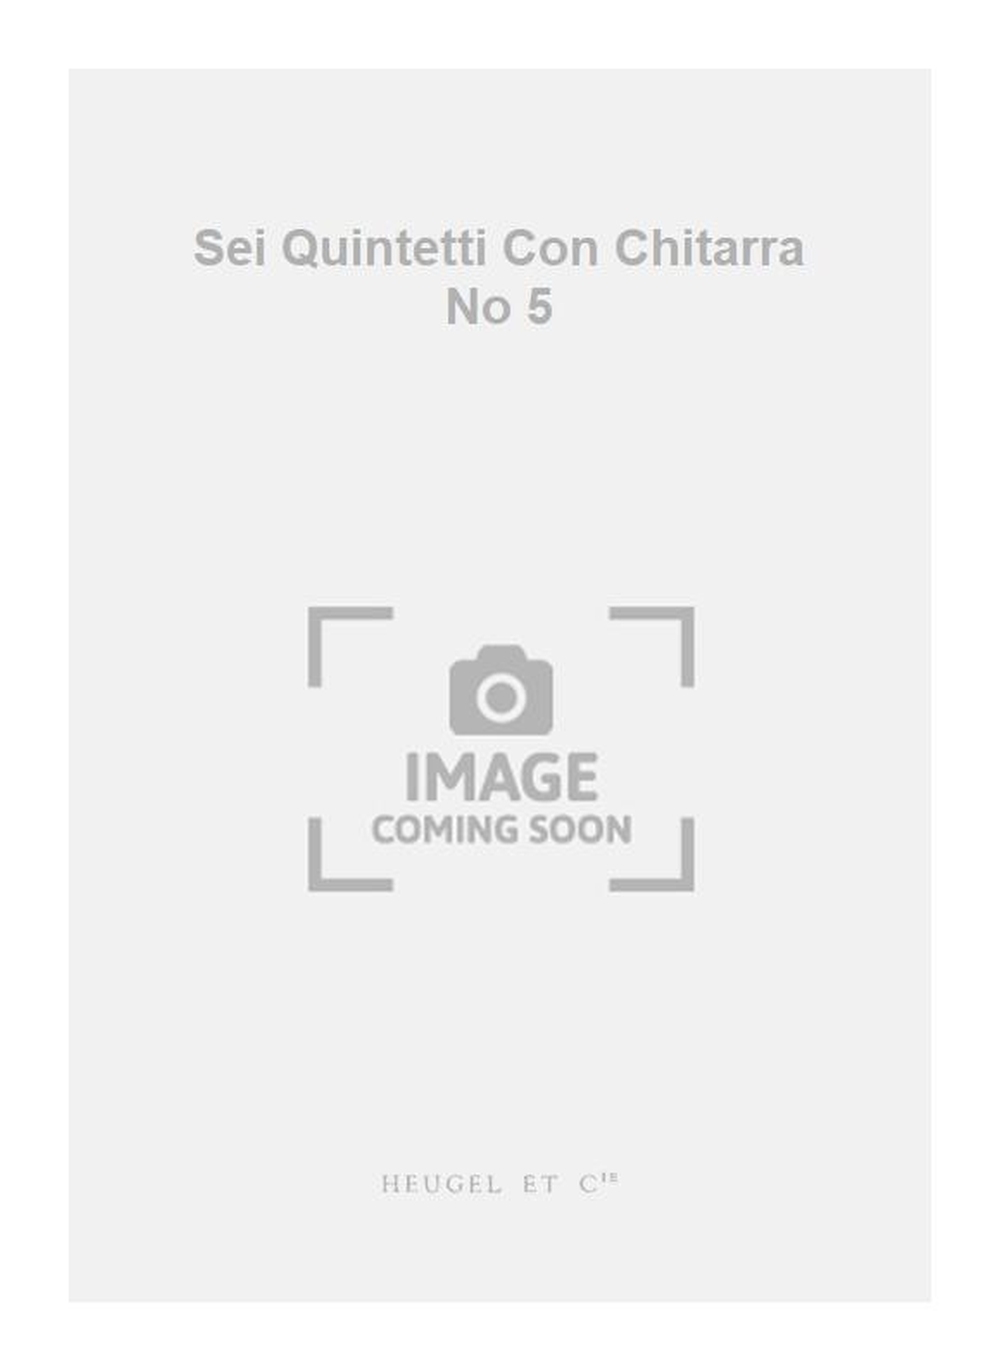 Luigi Boccherini: Sei Quintetti Con Chitarra No 5